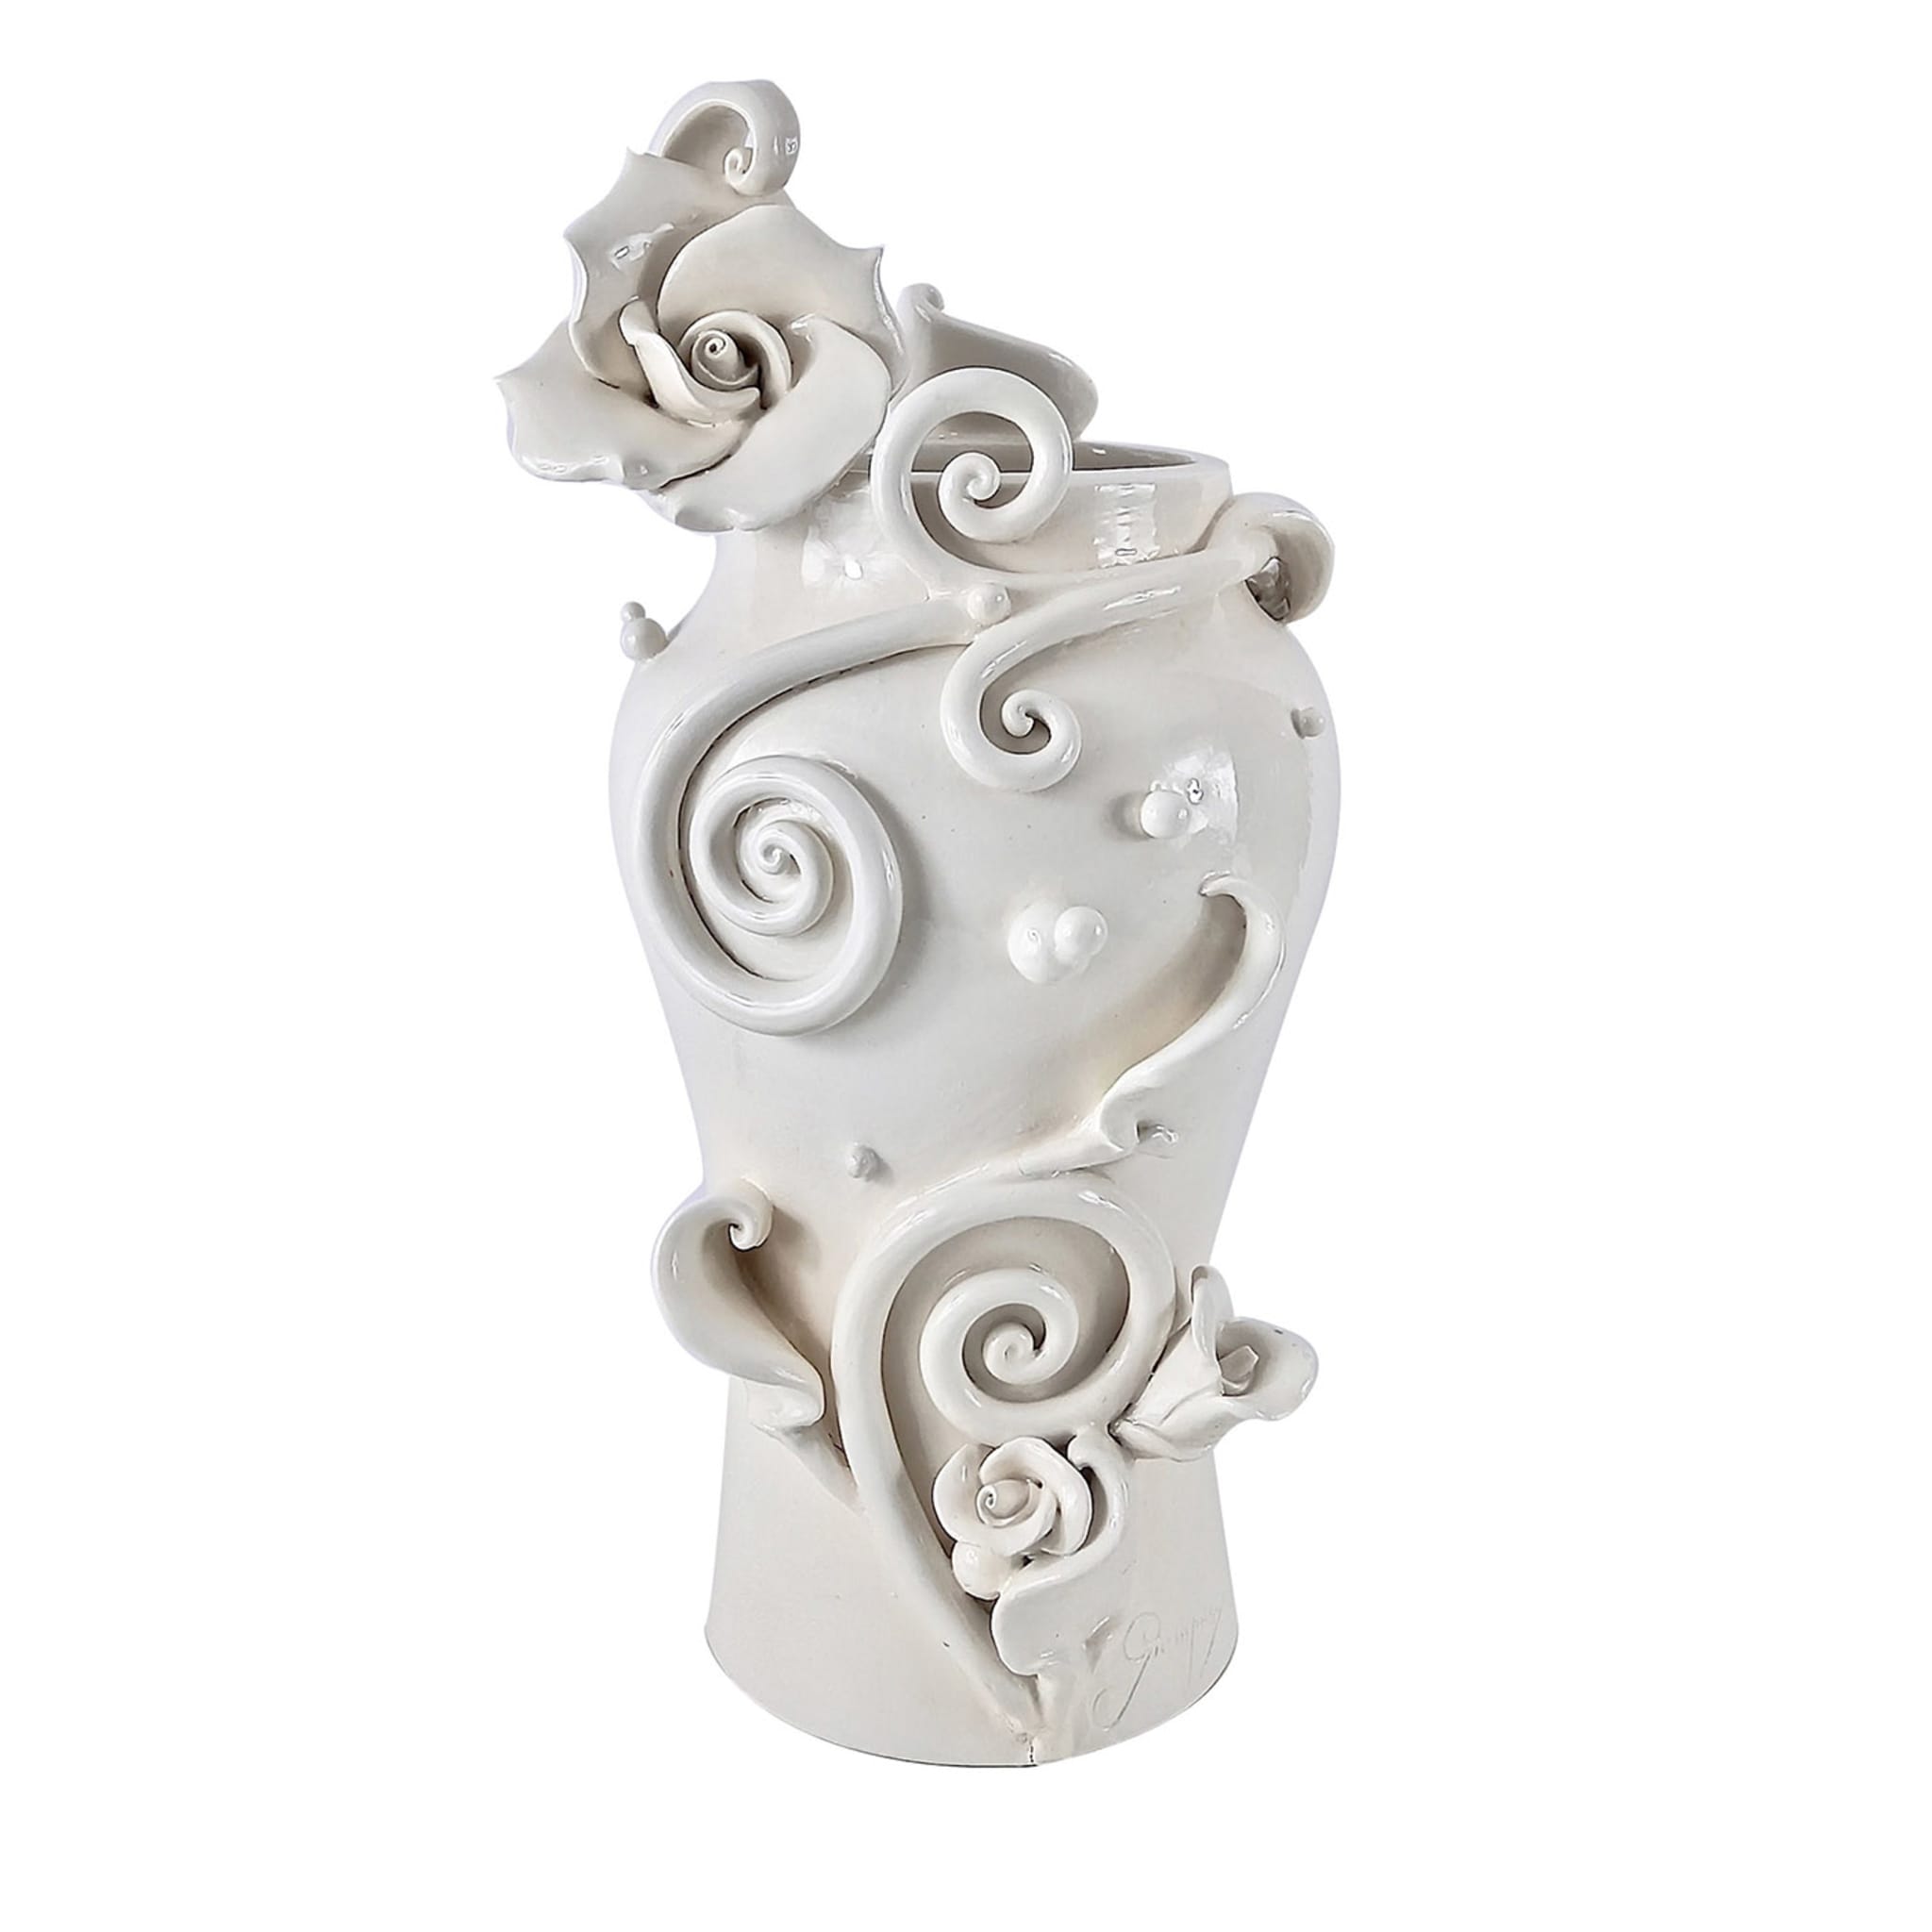 Alice's Rose's White Ceramic Vase - Main view